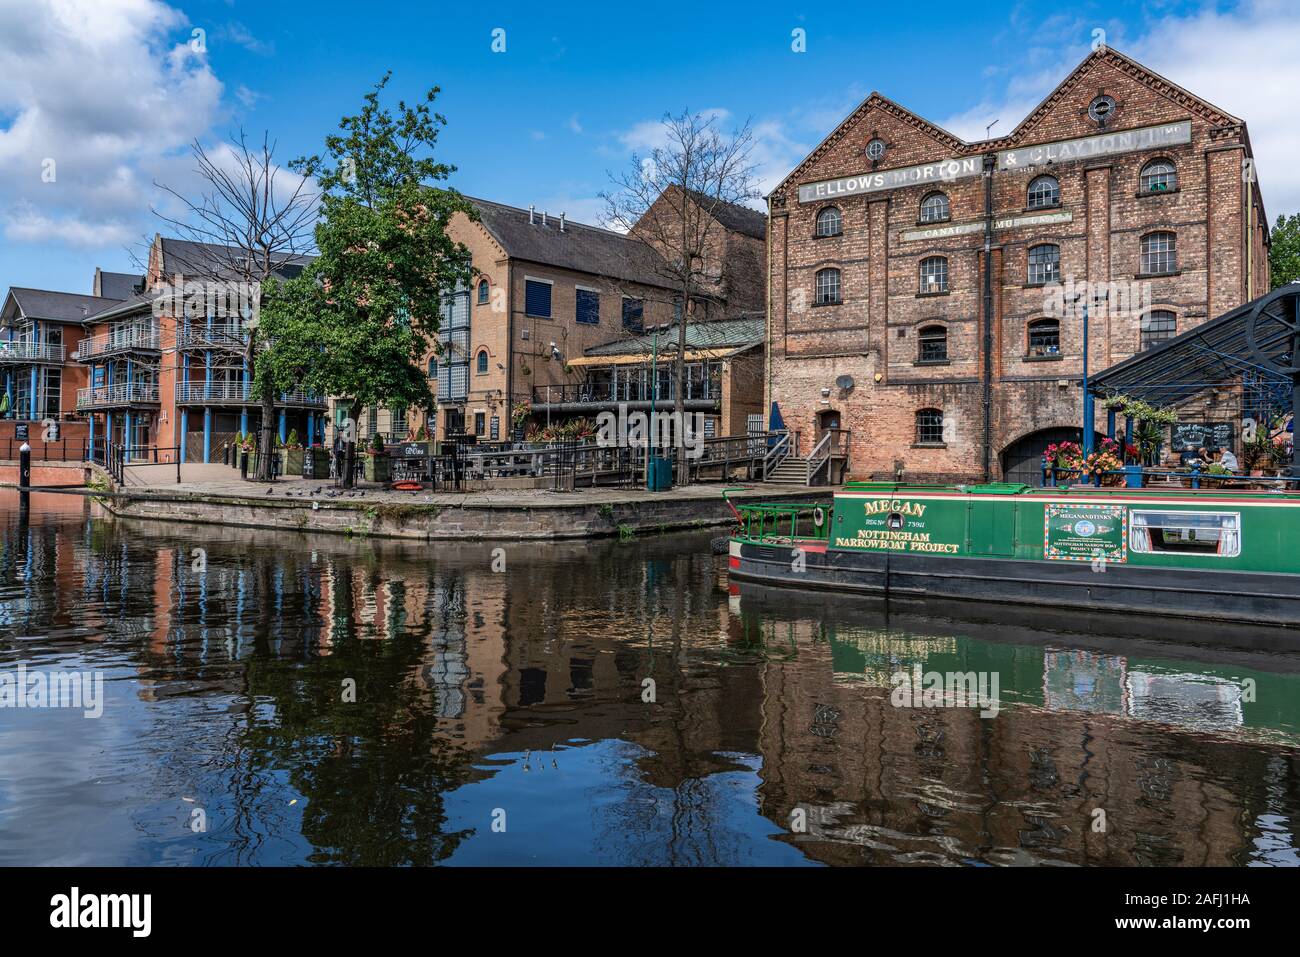 NOTTINGHAM, Großbritannien - 15 August: Blick auf die Altstadt riverside Architektur entlang der Uferpromenade am Schloss Wharf am 15. August 2019 in Nottingham. Stockfoto